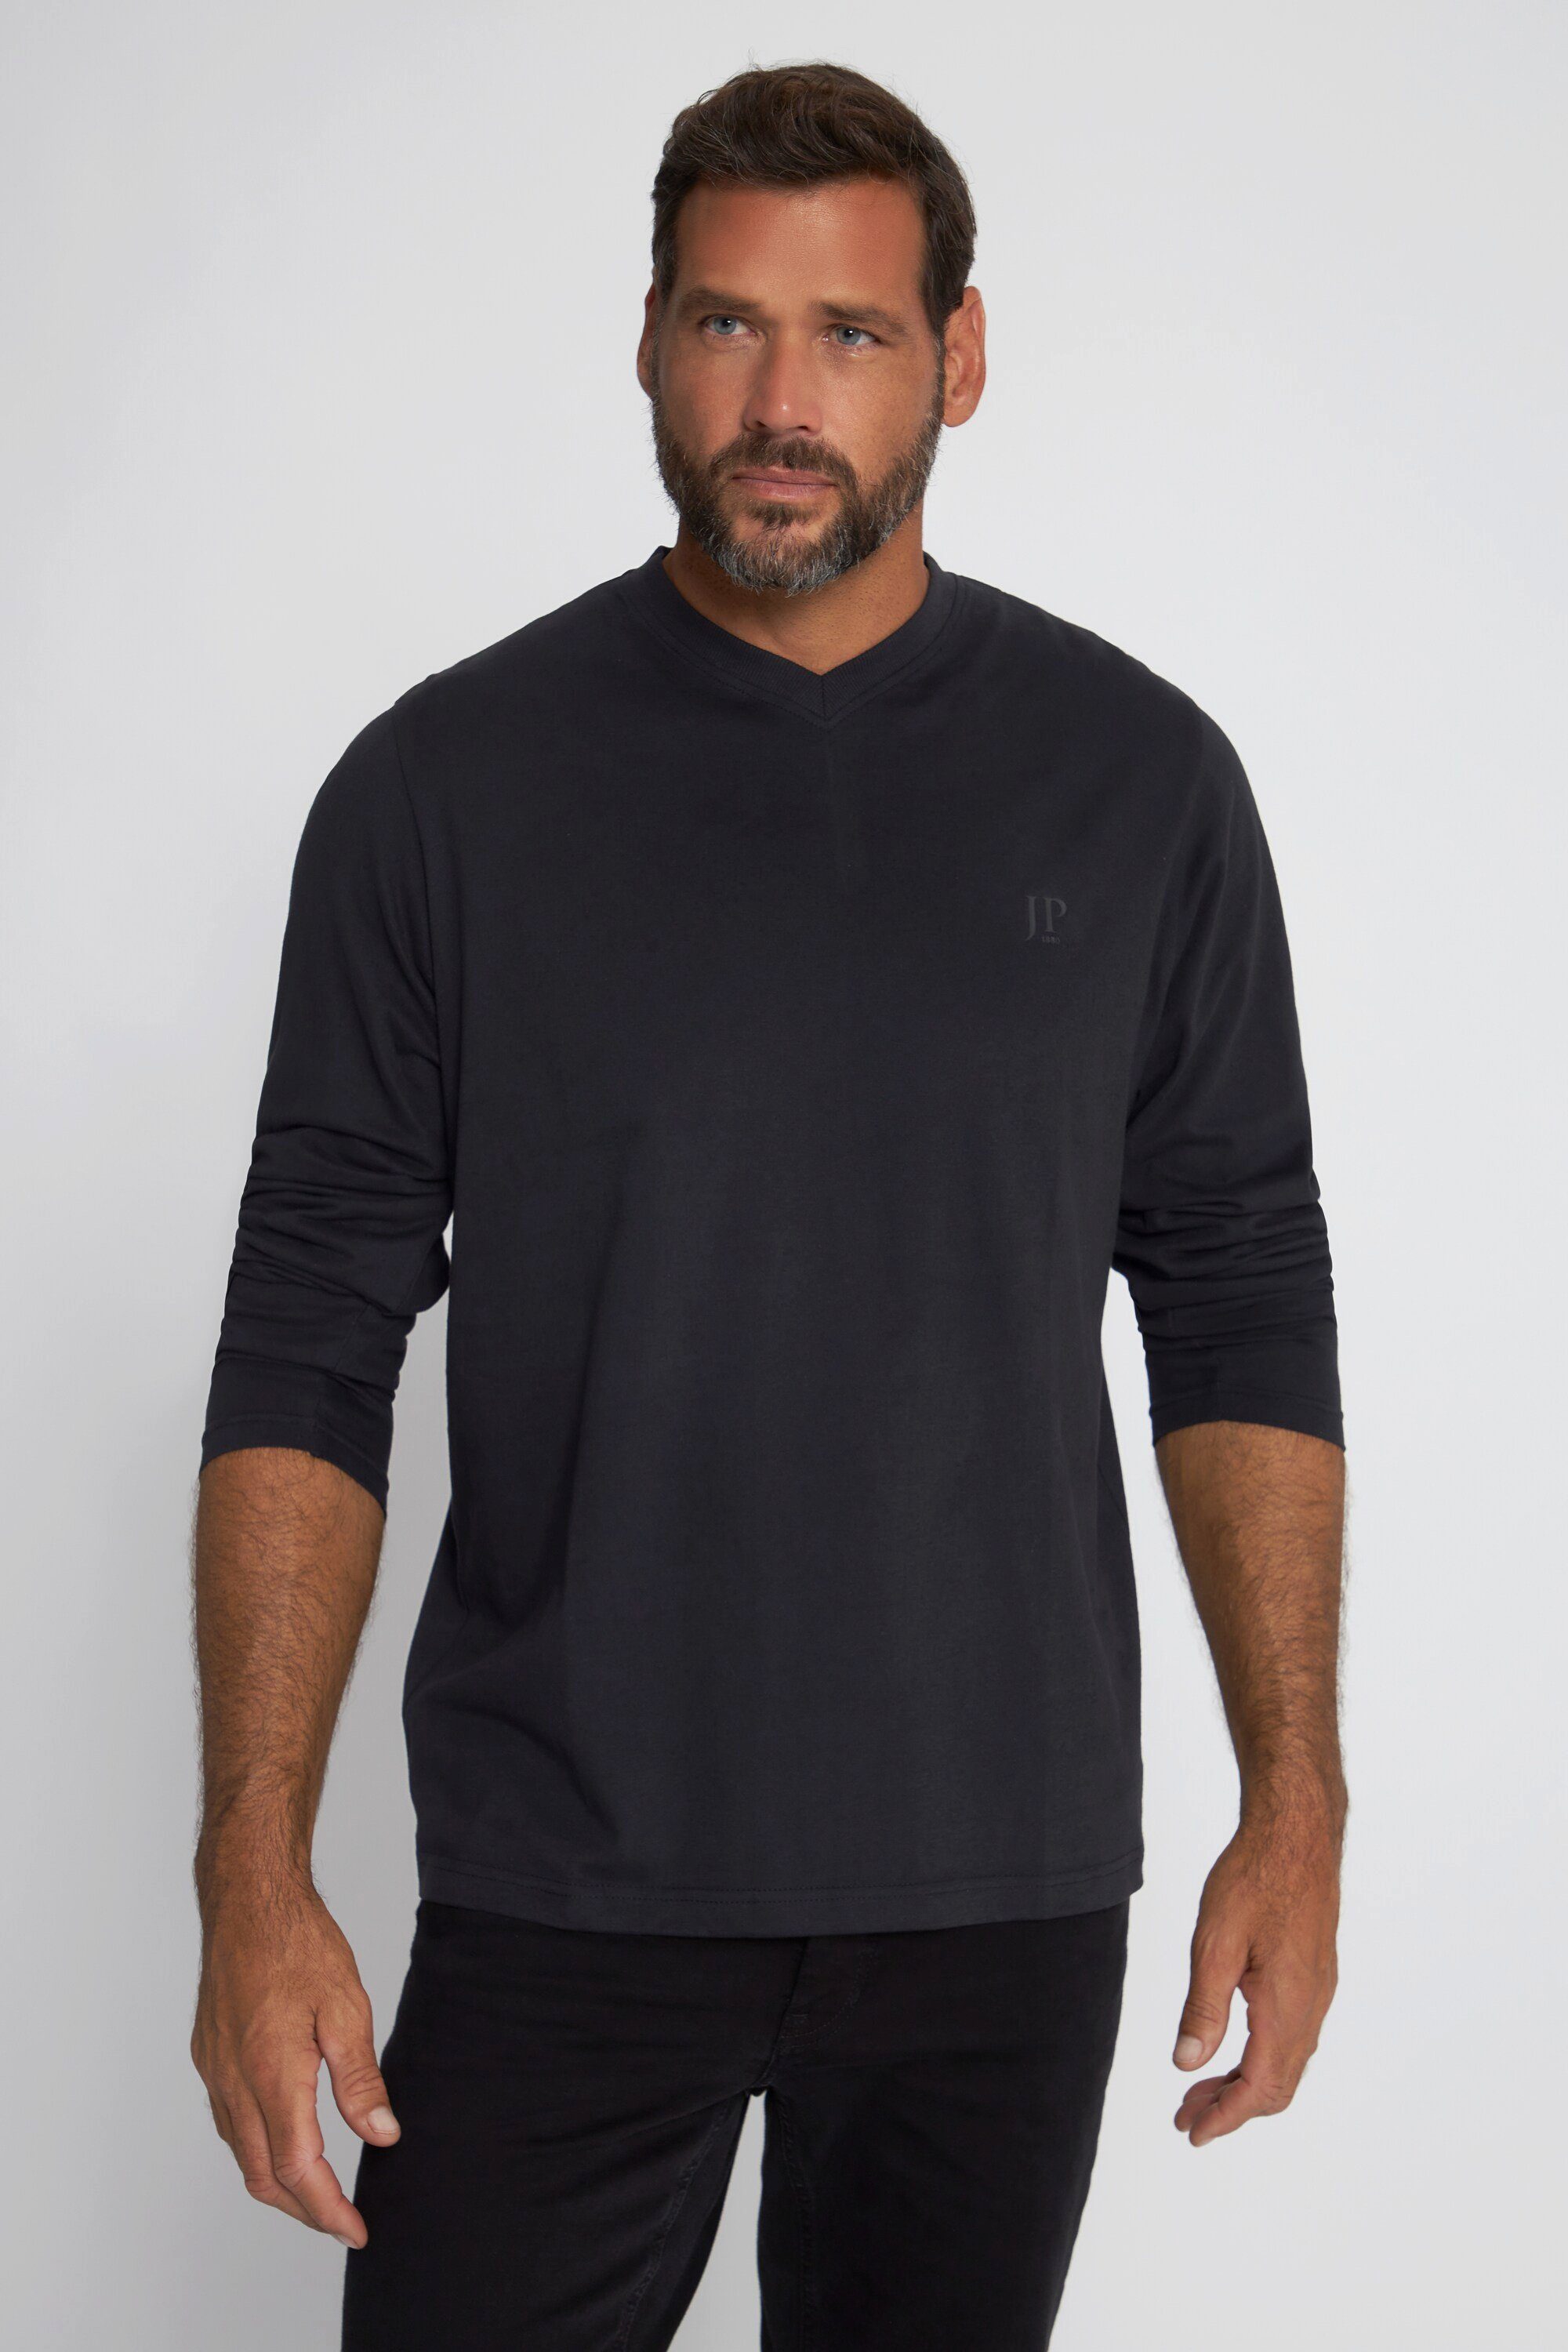 JP1880 T-Shirt T-Shirt Langarm V-Ausschnitt bis 8 XL schwarz